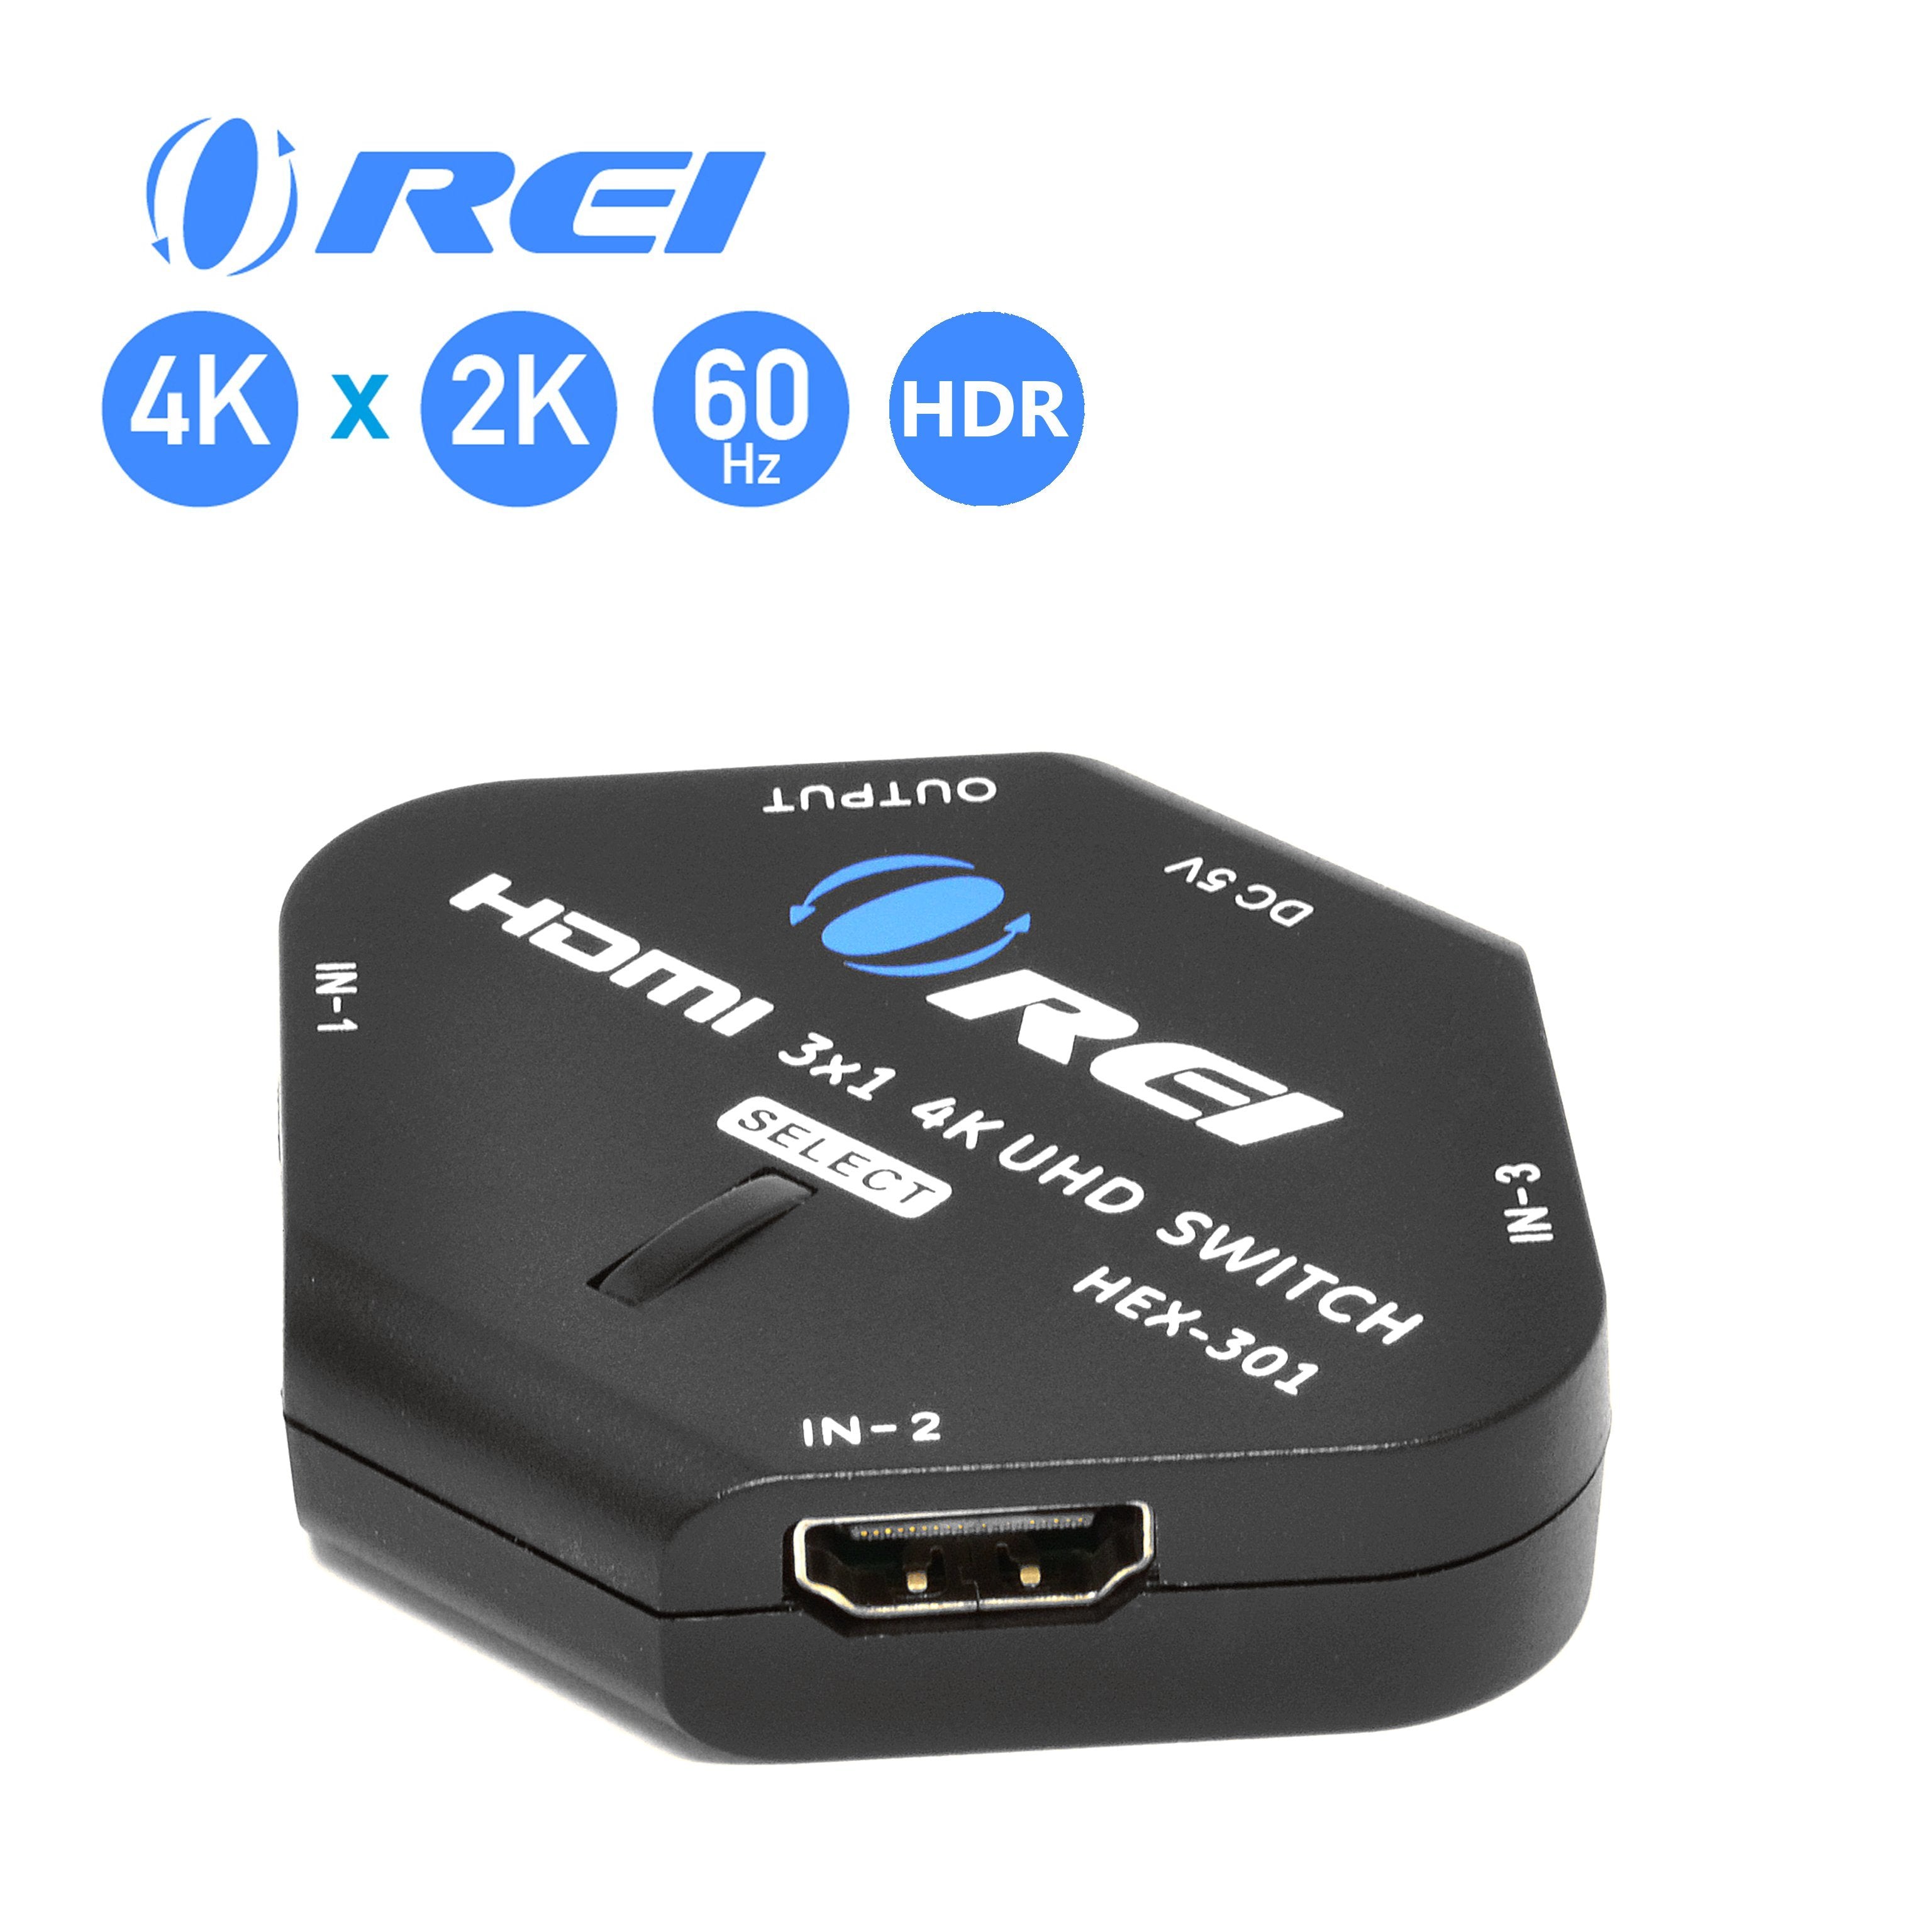 4K 3x1 HDMI Switch 2 HDMI + USB-C Input (UHD-301C)